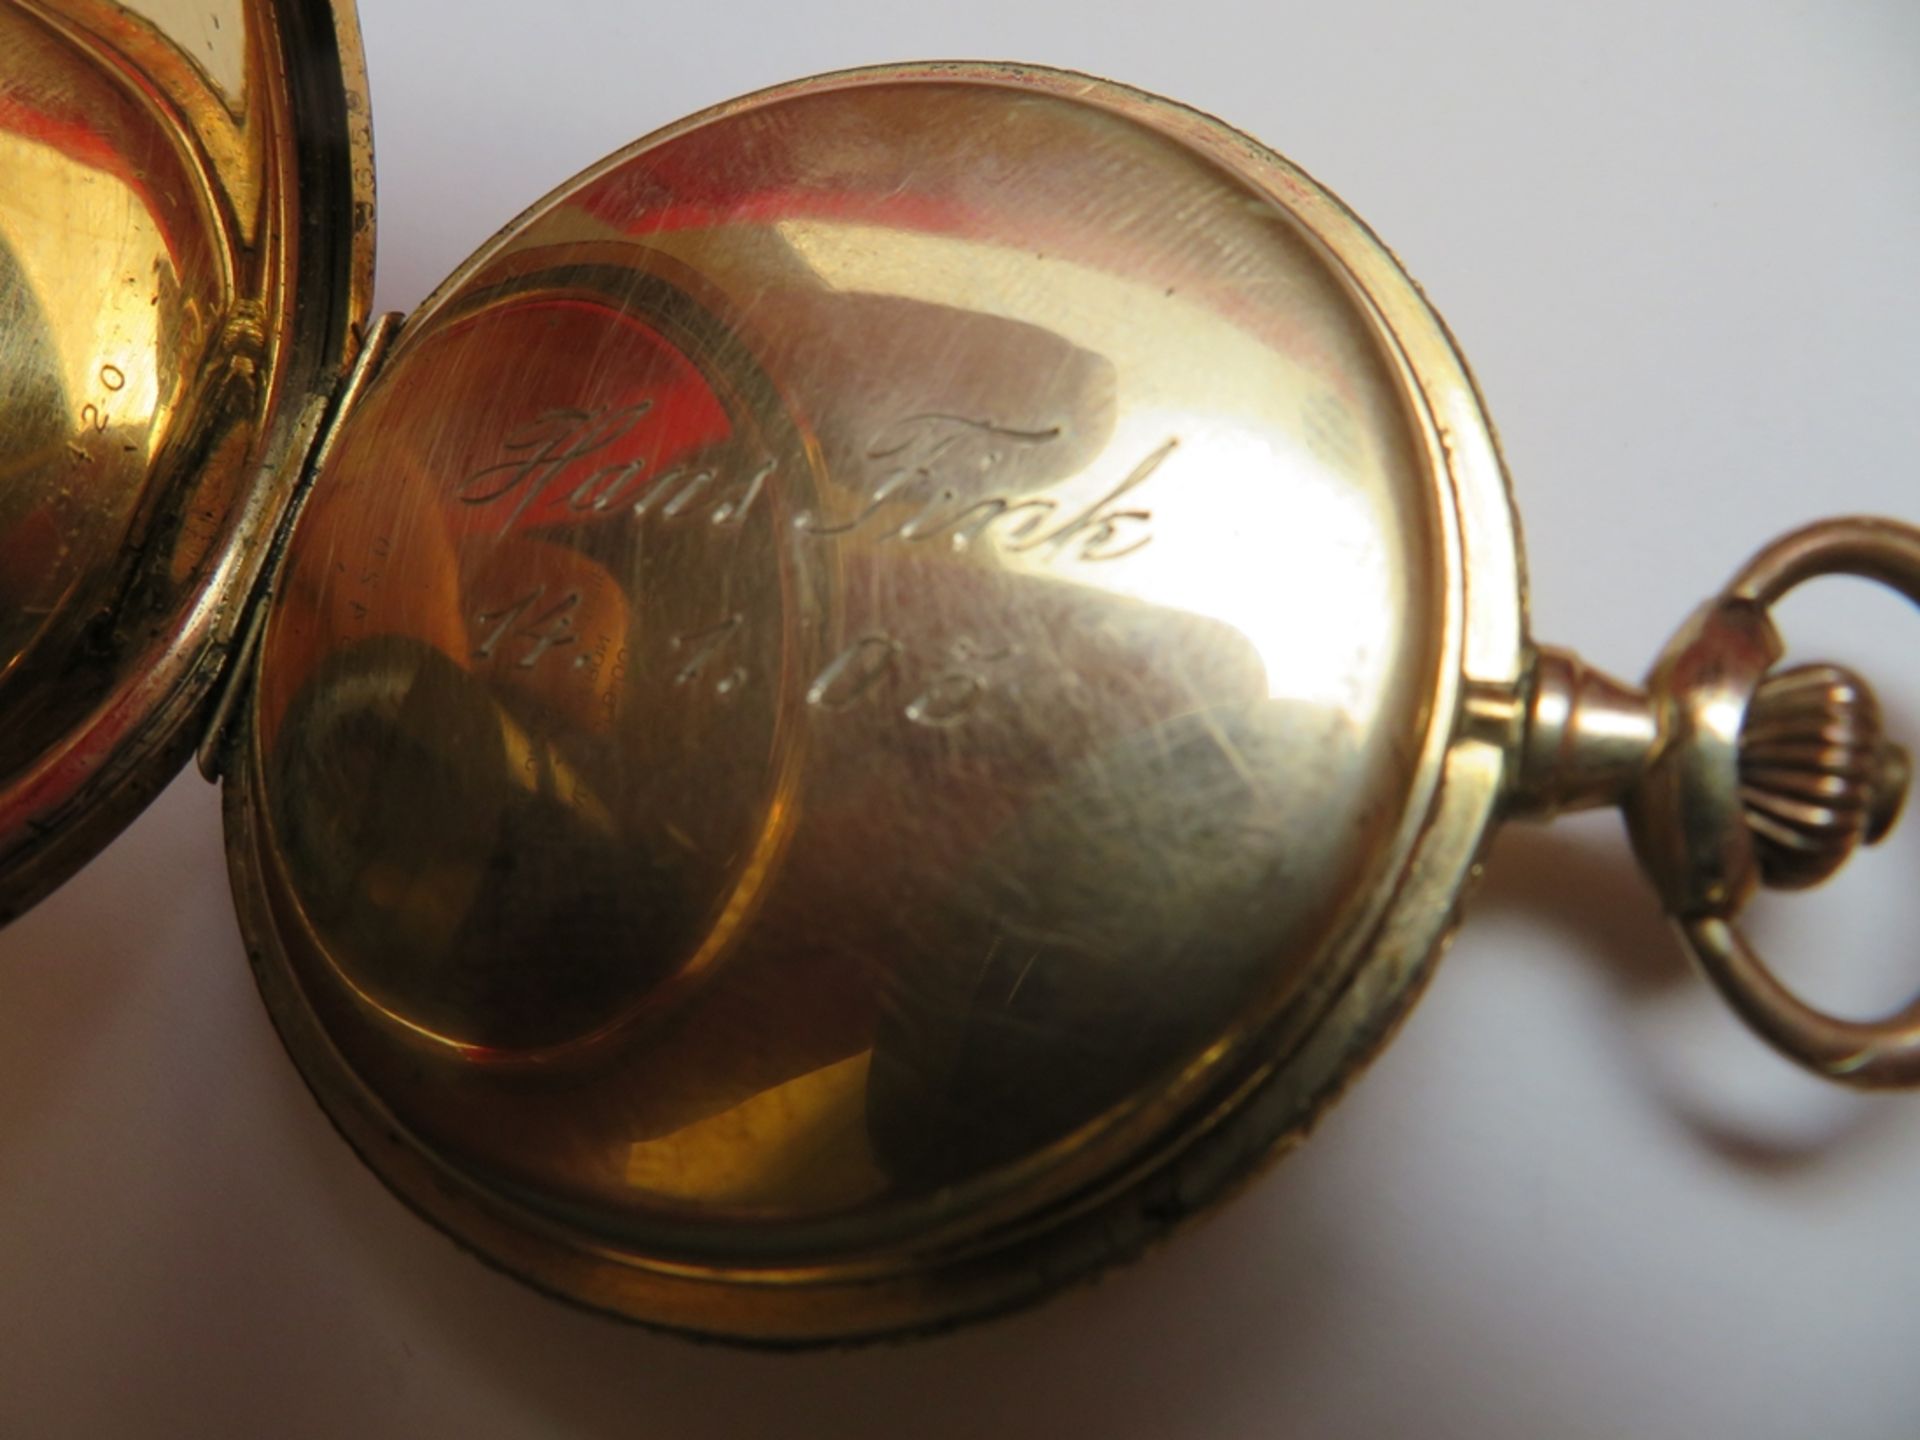 Sprungdeckeltaschenuhr, um 1900, 20 Micron vergoldet, Kronenaufzug, defekt, Glas fehlt, d 6,5 cm. - Bild 4 aus 4